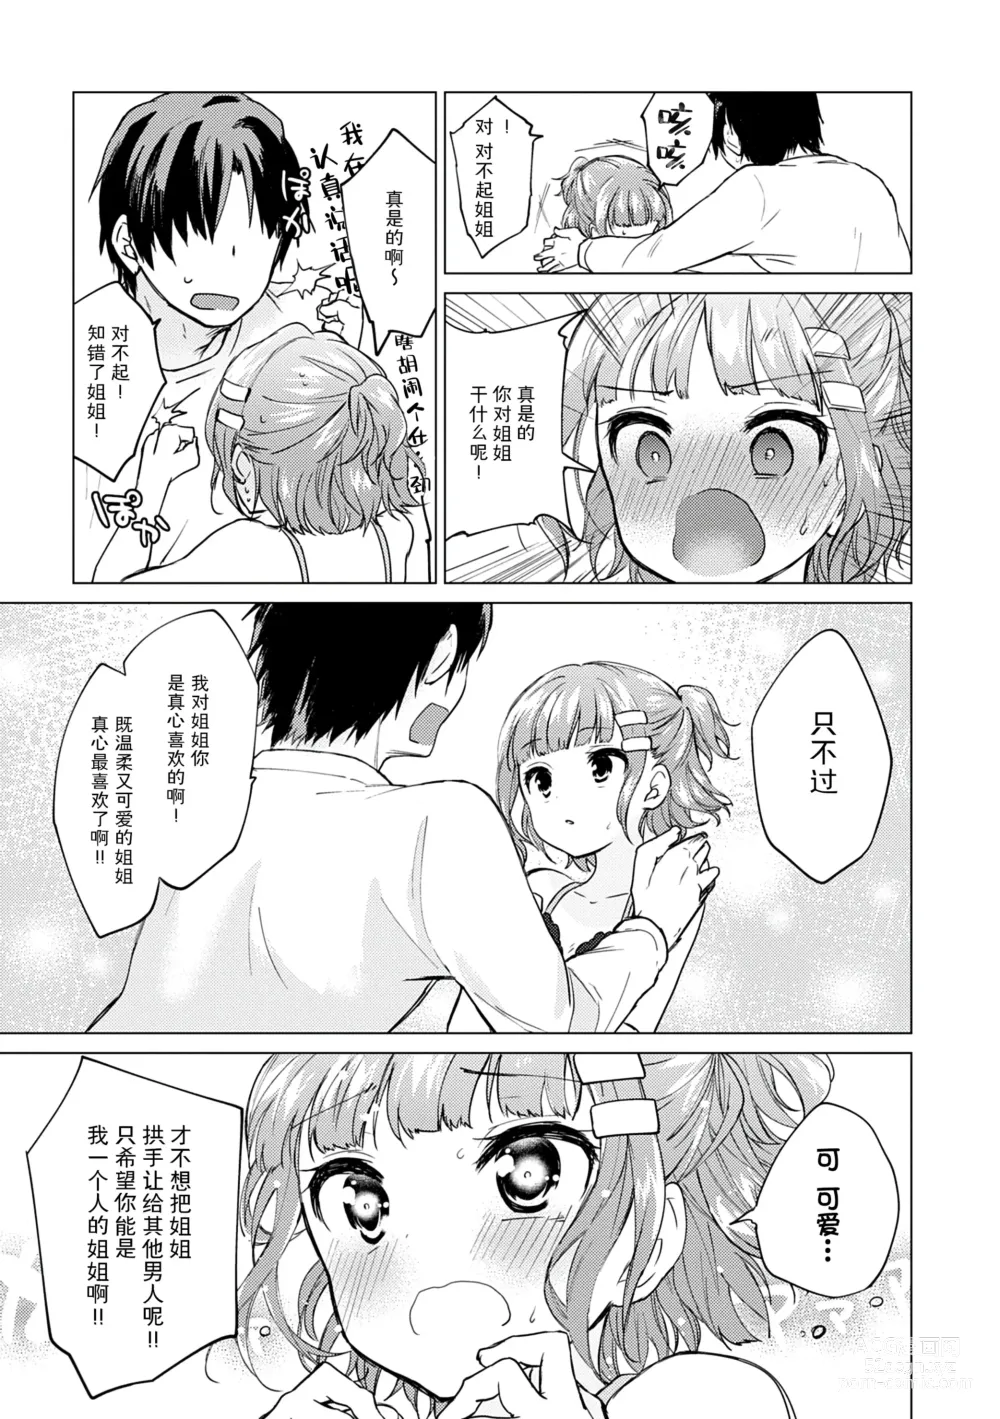 Page 173 of manga Otouto Senyou